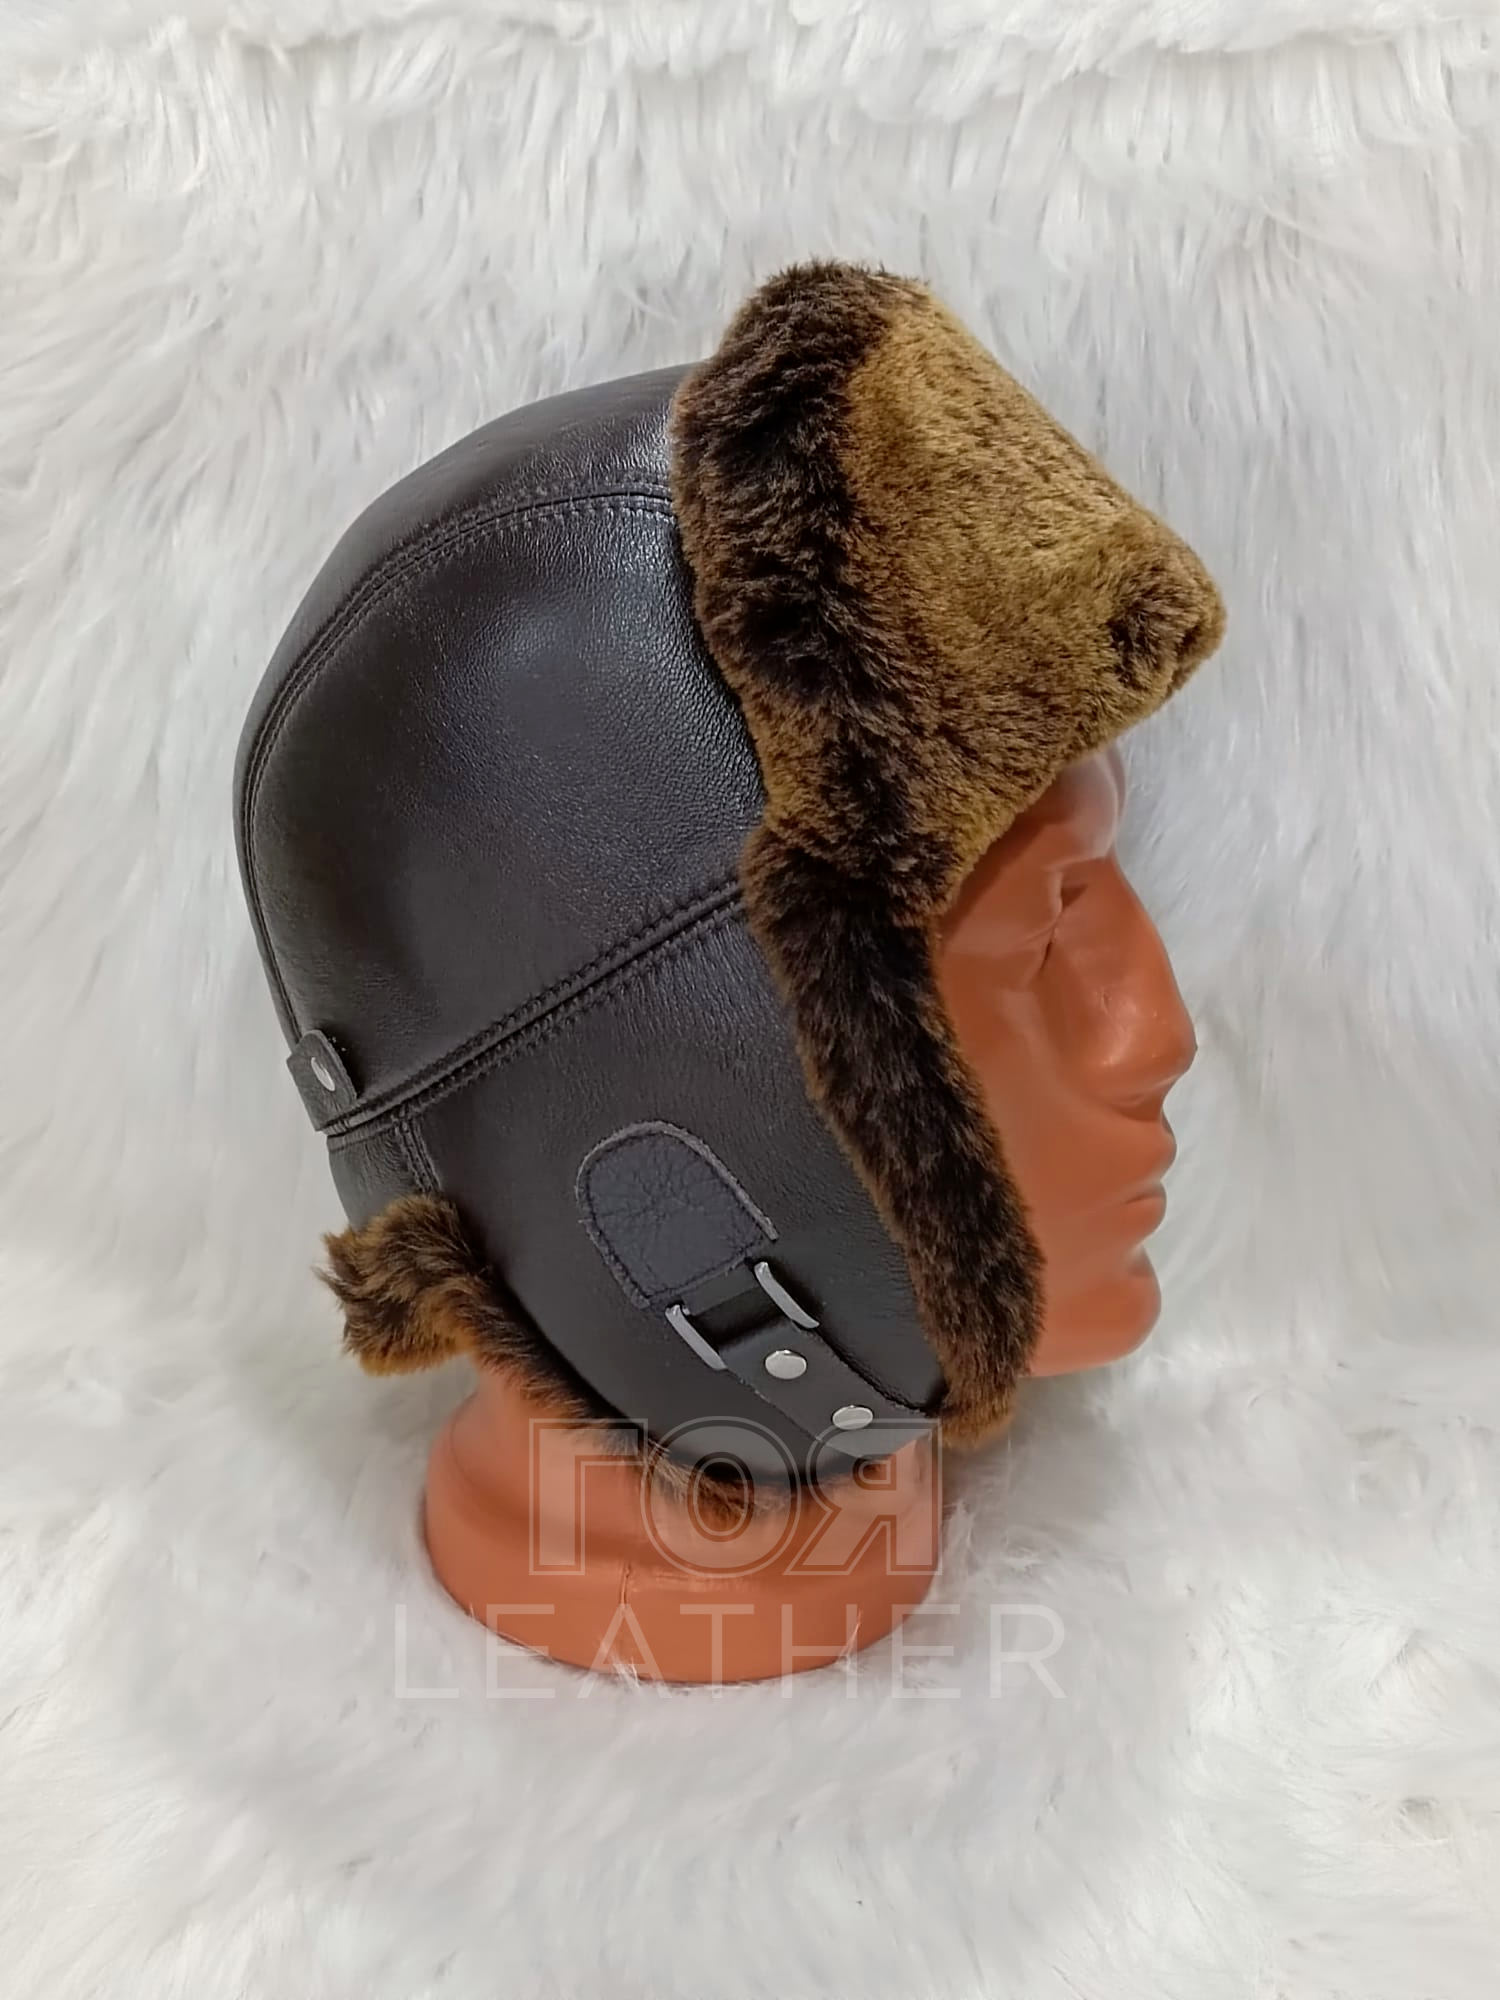 Кожена шапка ушанка от ГОЯ Leather. Изработена от агнешка напа в комбинация с агнешка тула. Моделът е подходящ и за мъже, и за жени.